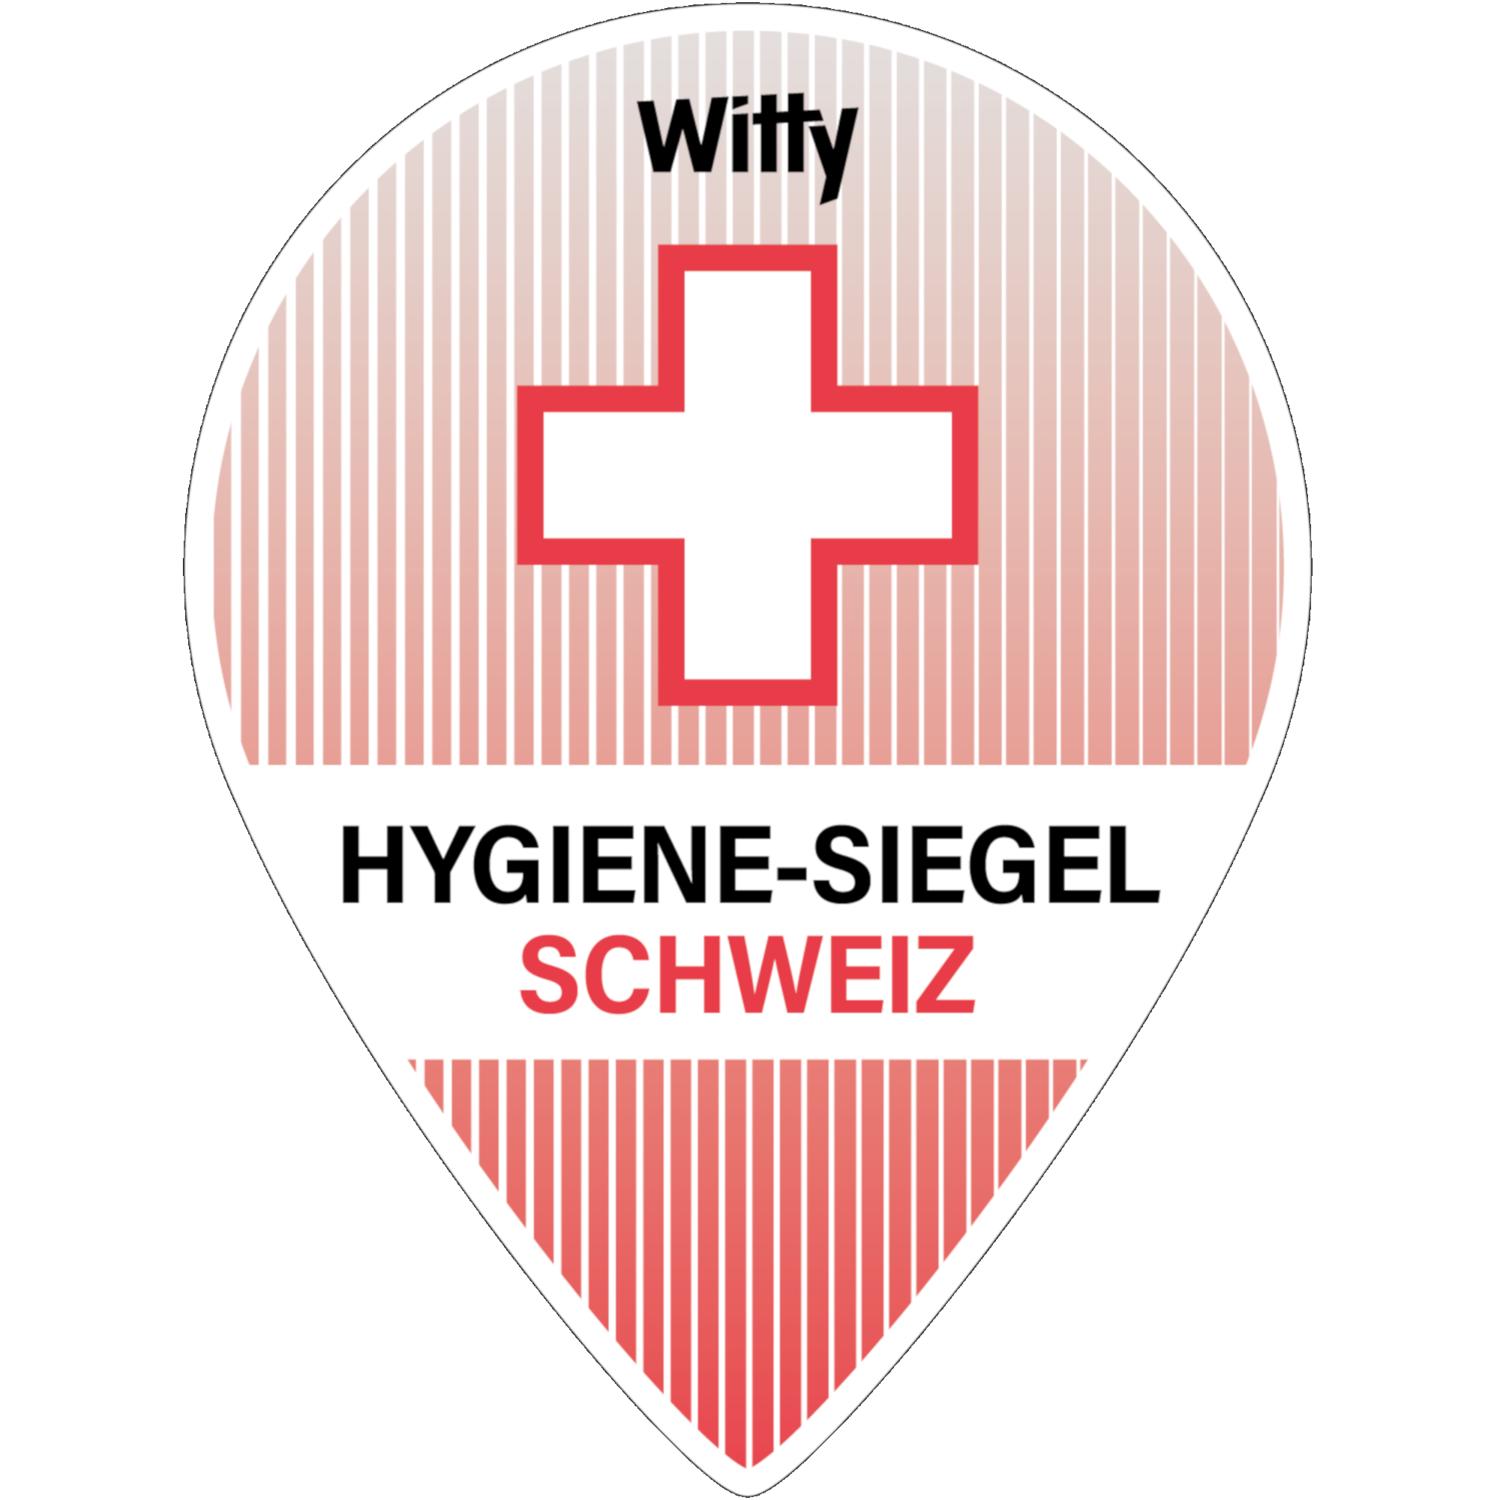 Hygiene-Siegel Schweiz